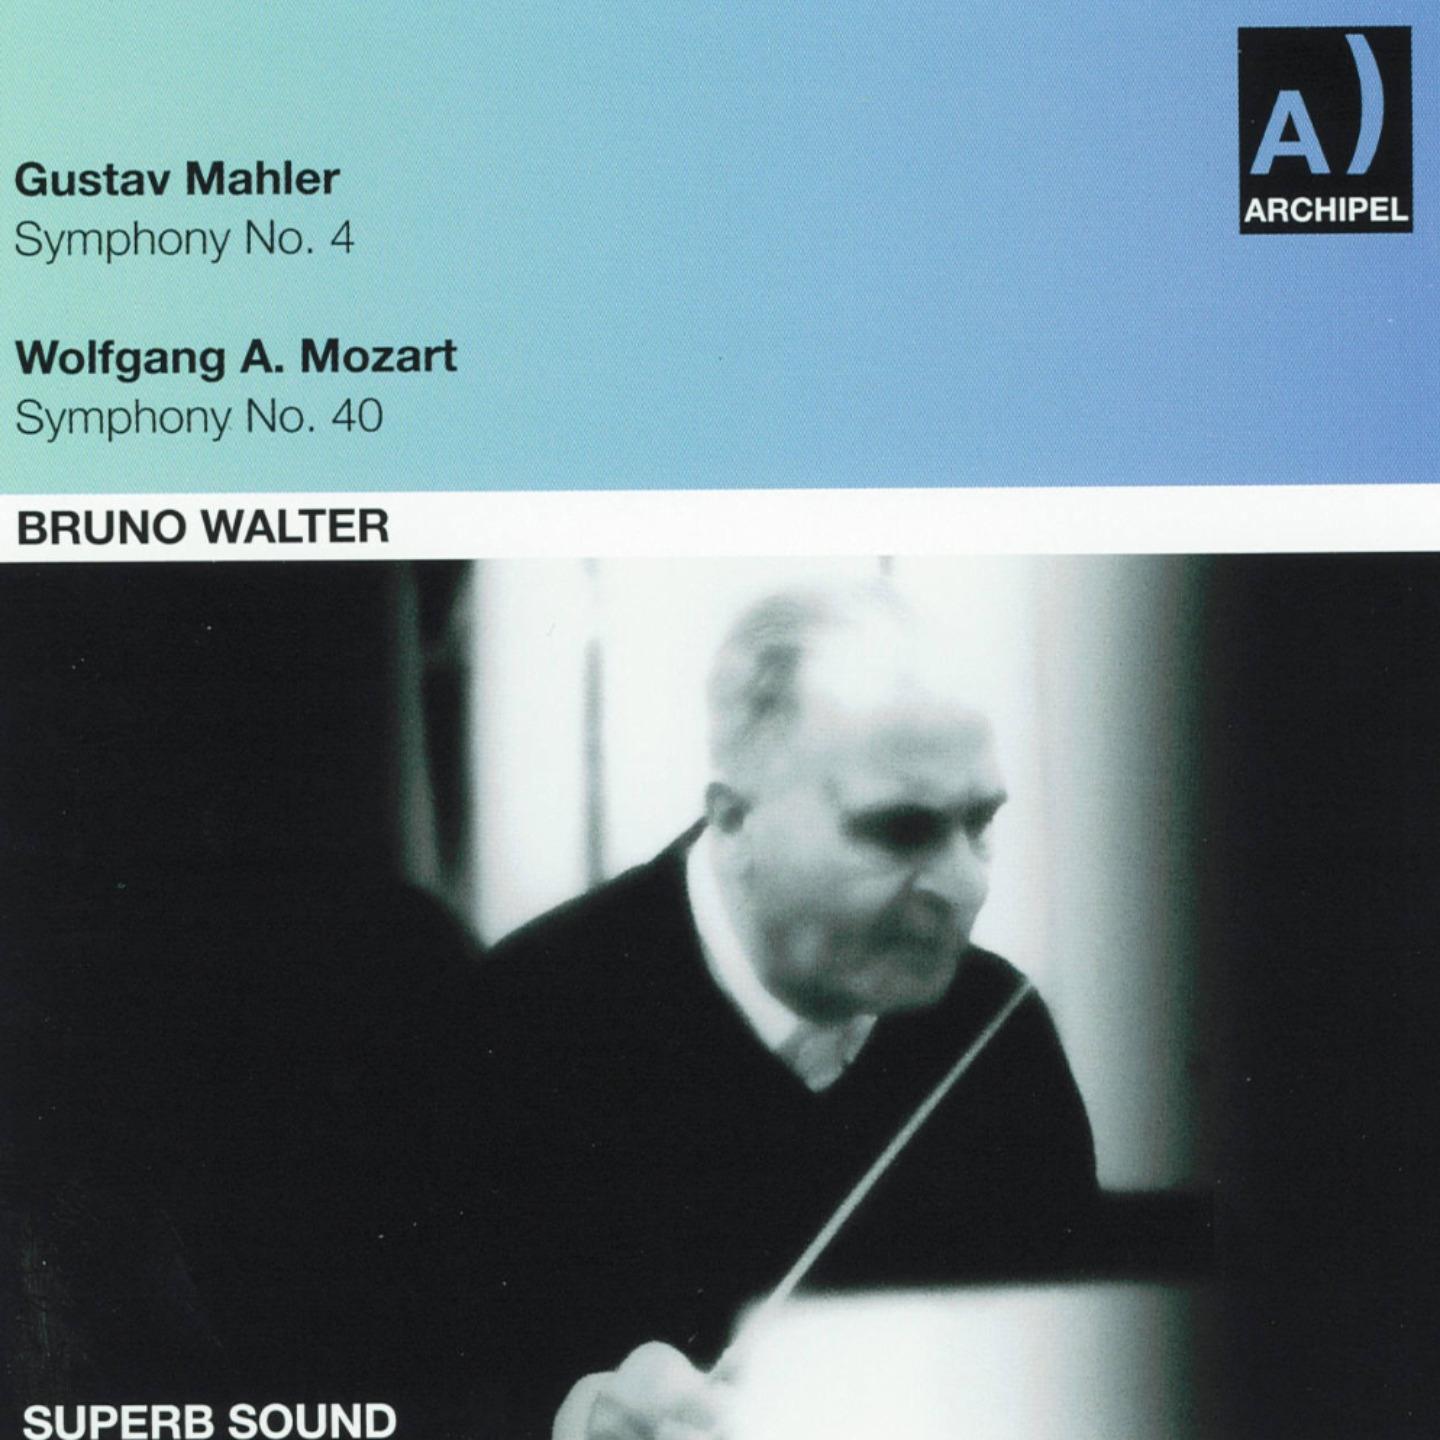 Gustav Mahler: Symphony No. 4 - Wolfgang Amadeus Mozart: Symphony No. 40